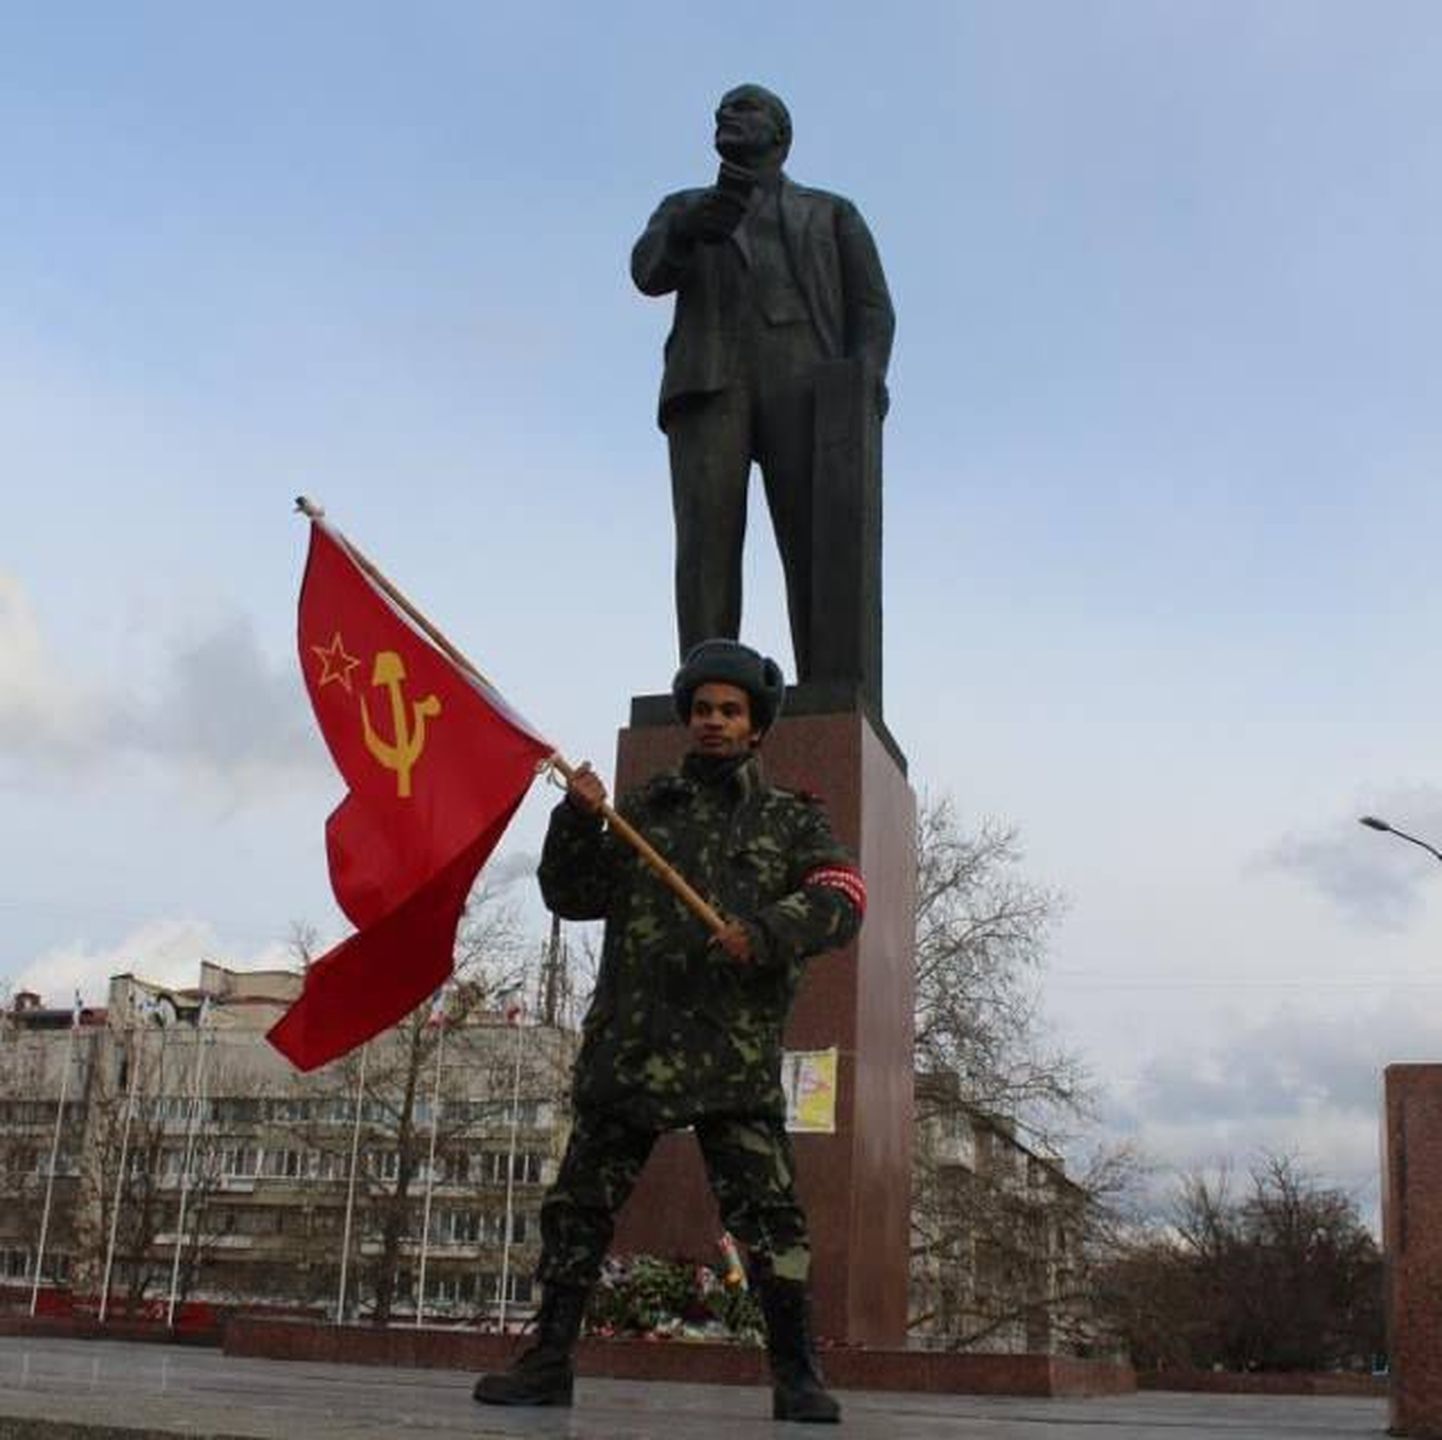 Beness Aijo Ukrainas NSV Liidu lipuga.